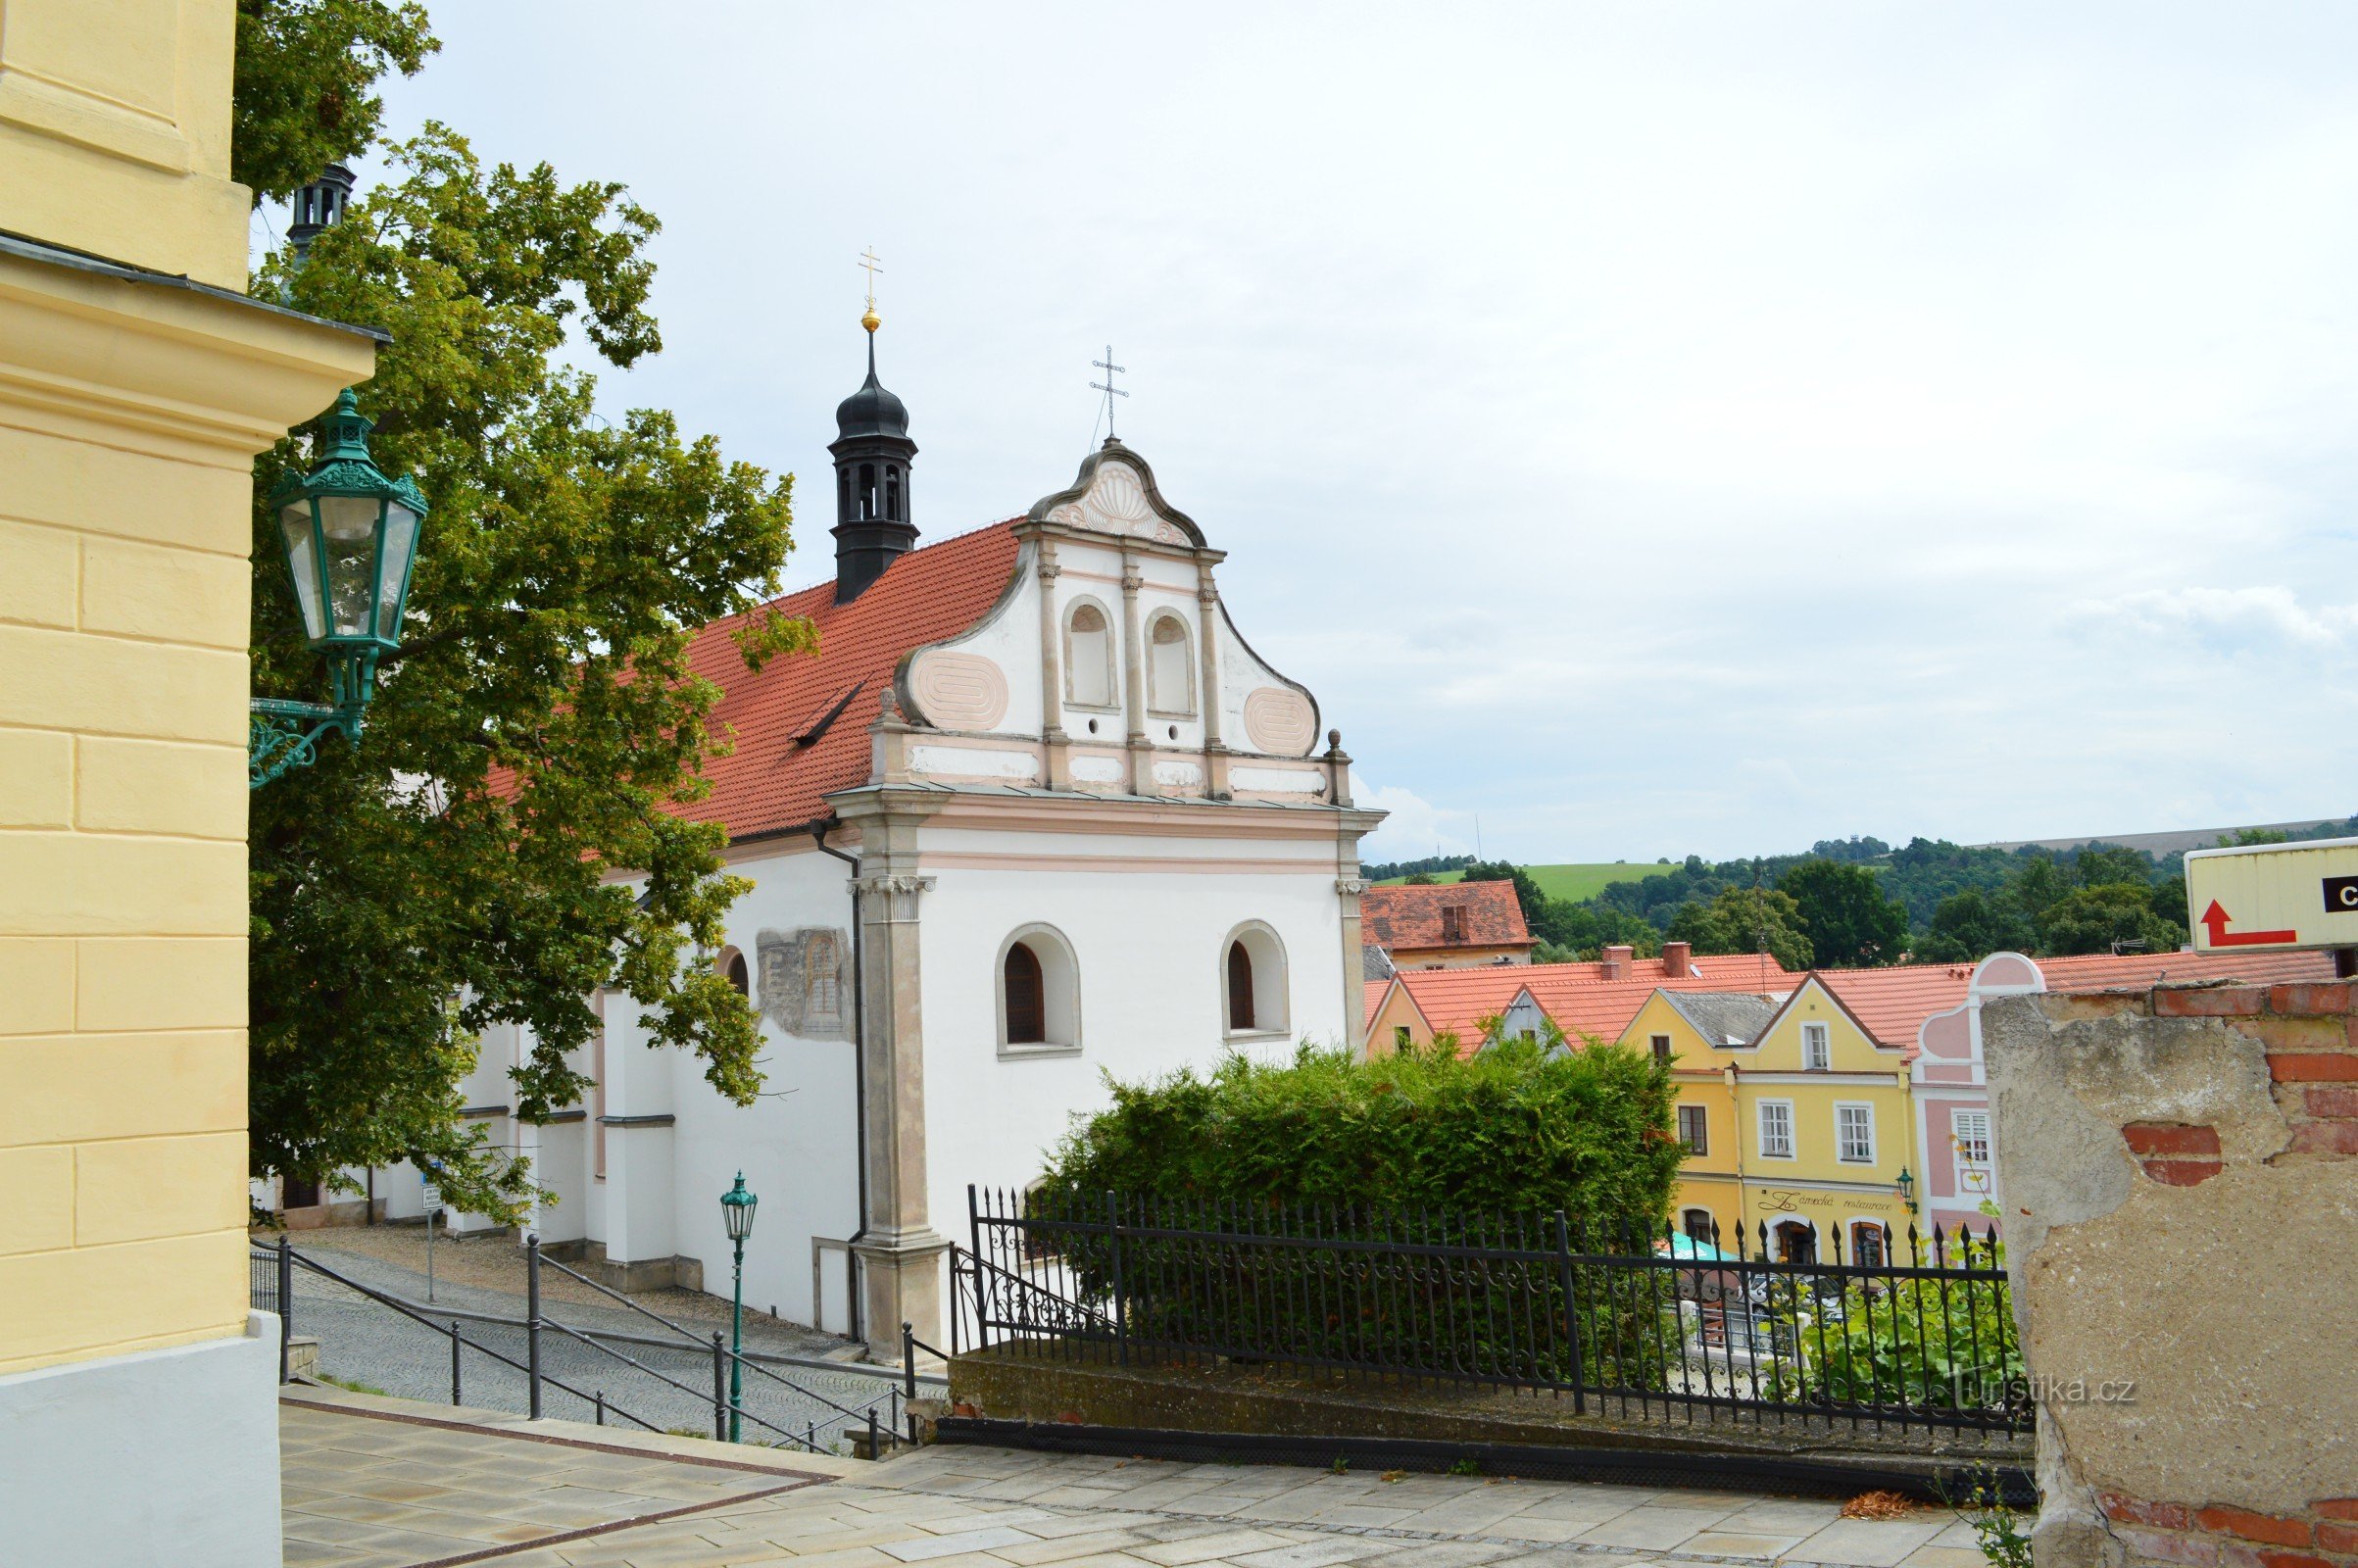 Lâu đài Horšovský Týn